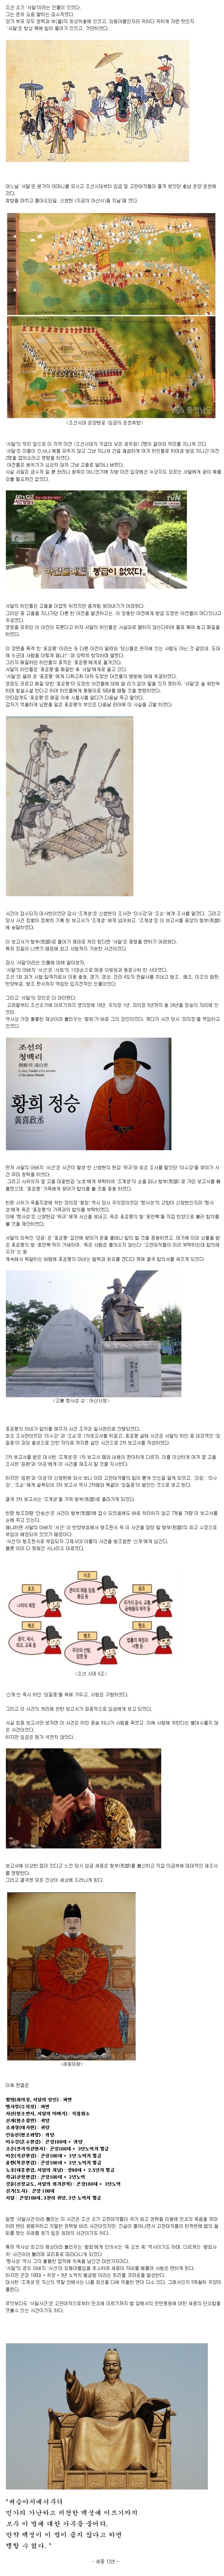 조선시대 최대 권력형 비리 사건.jpg